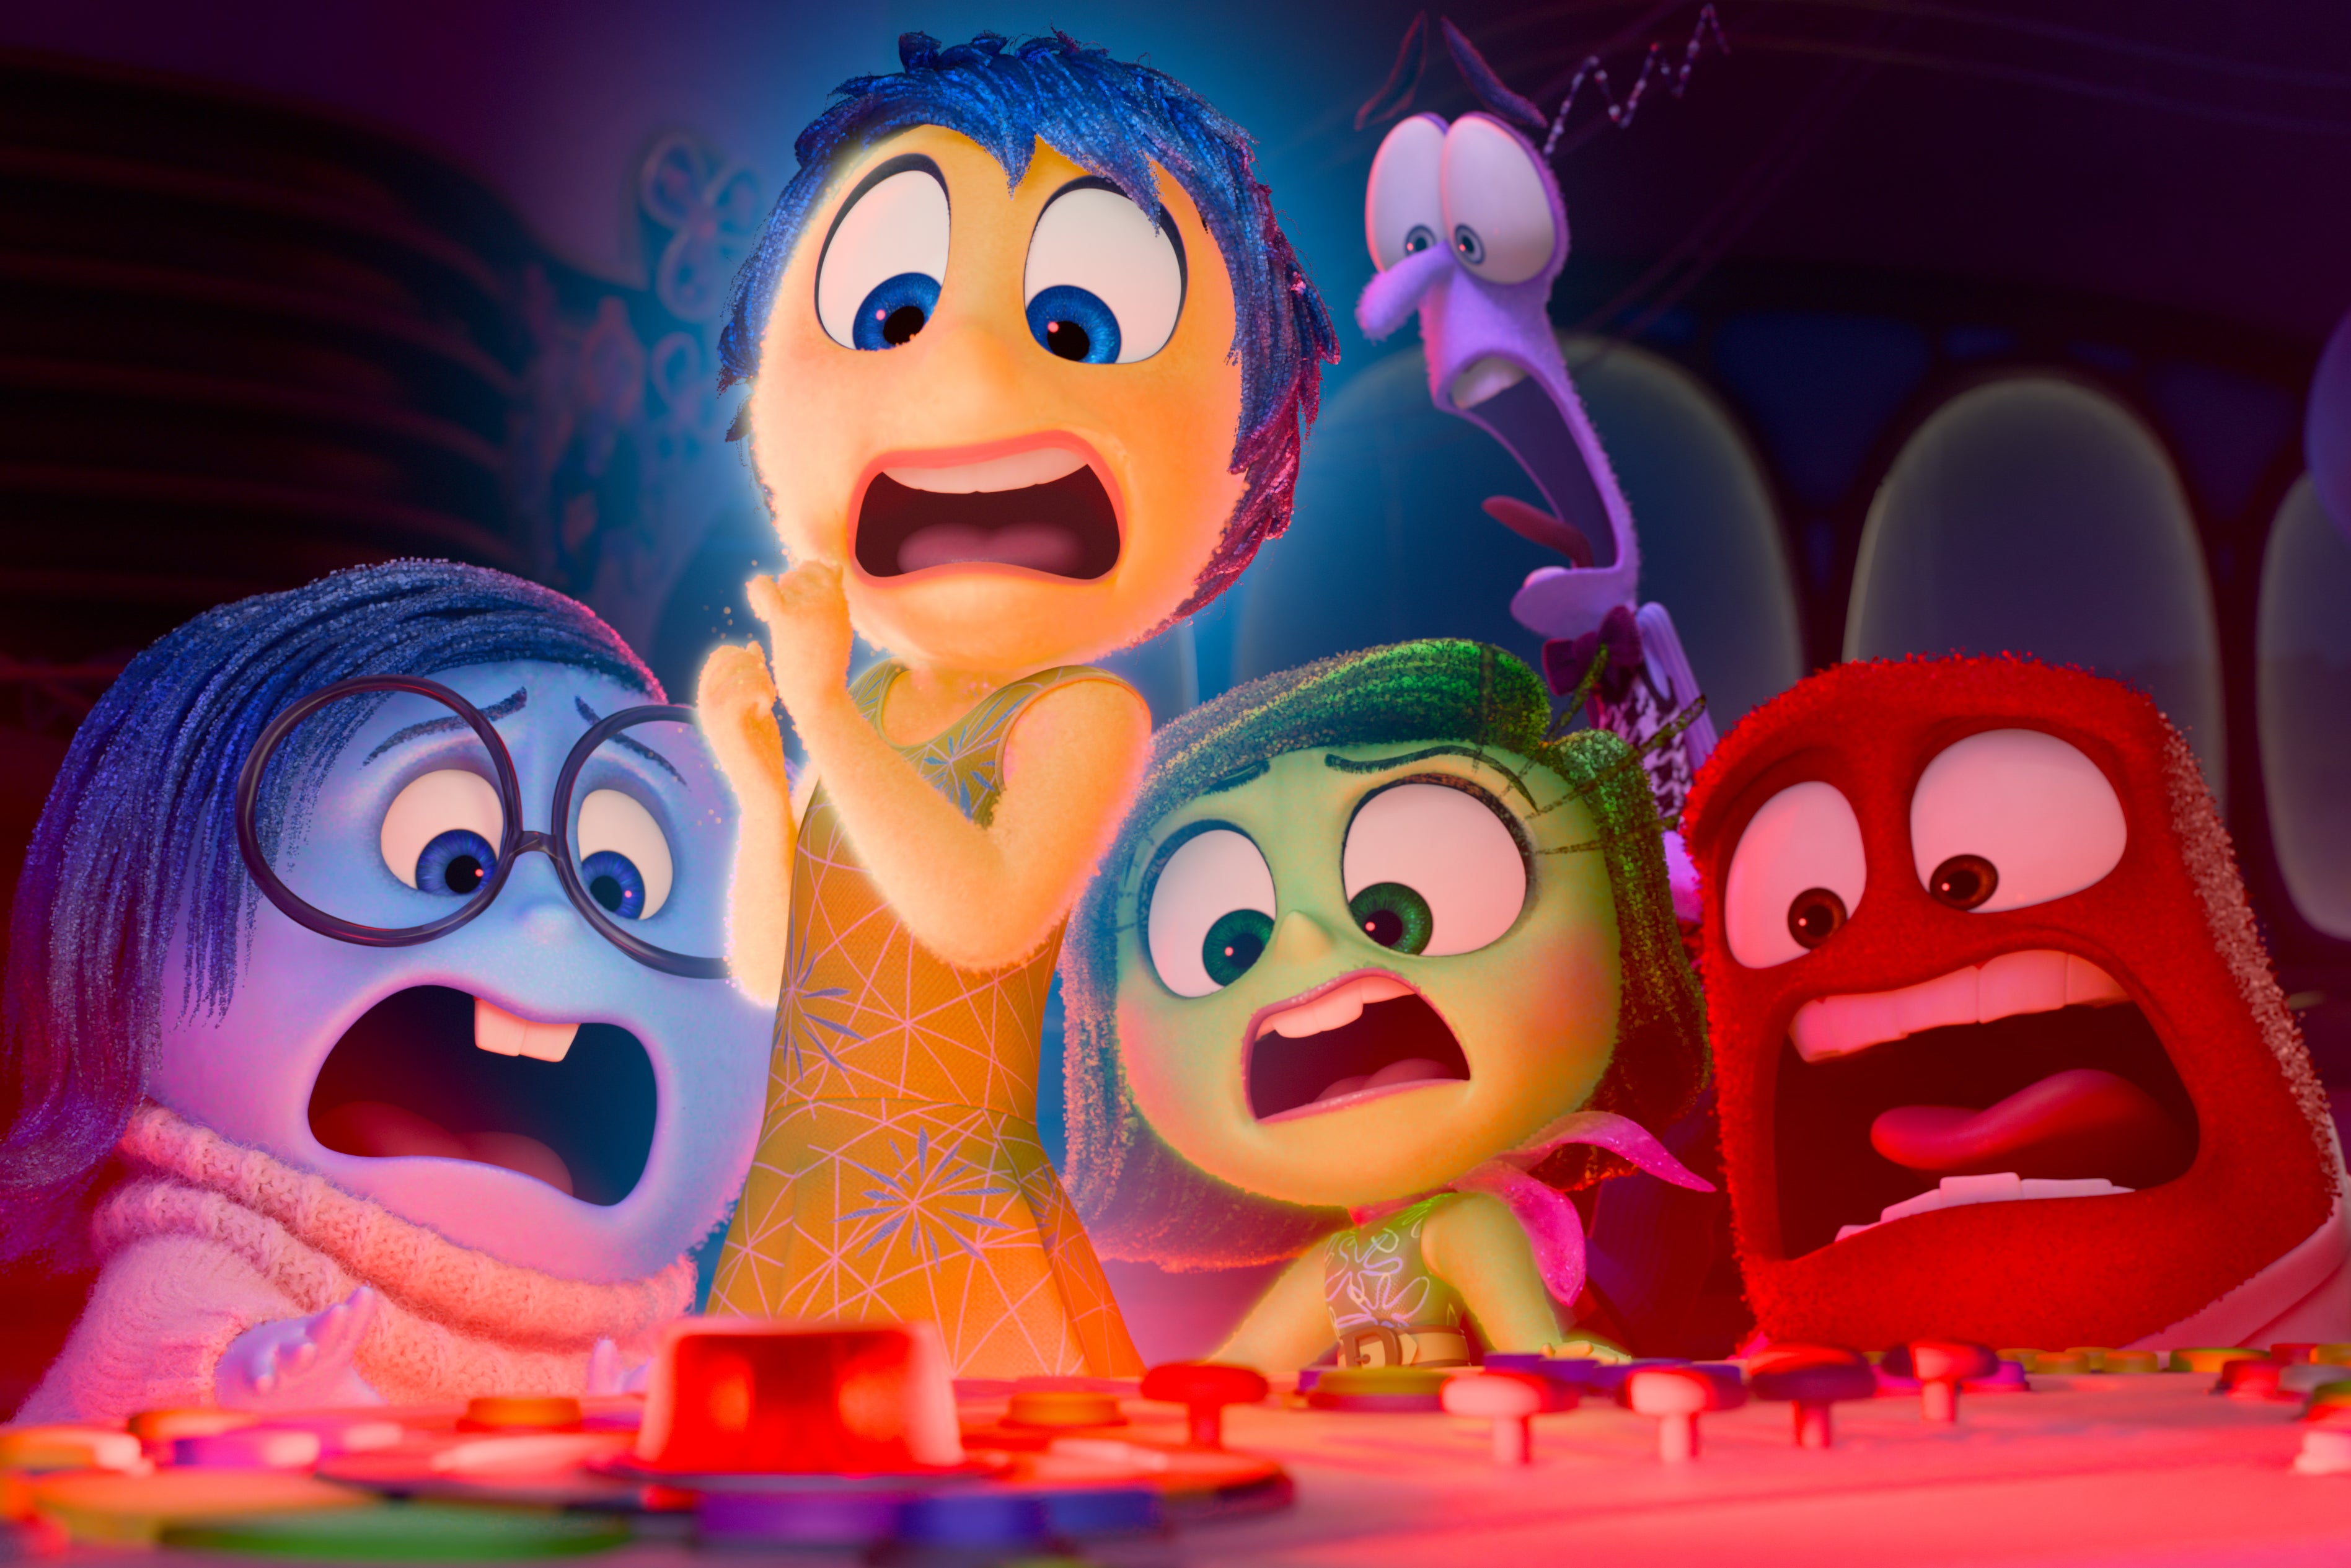 inside out, pixar, bill hader, inside out 2 fans ‘heartbroken’ over one key change from pixar’s original